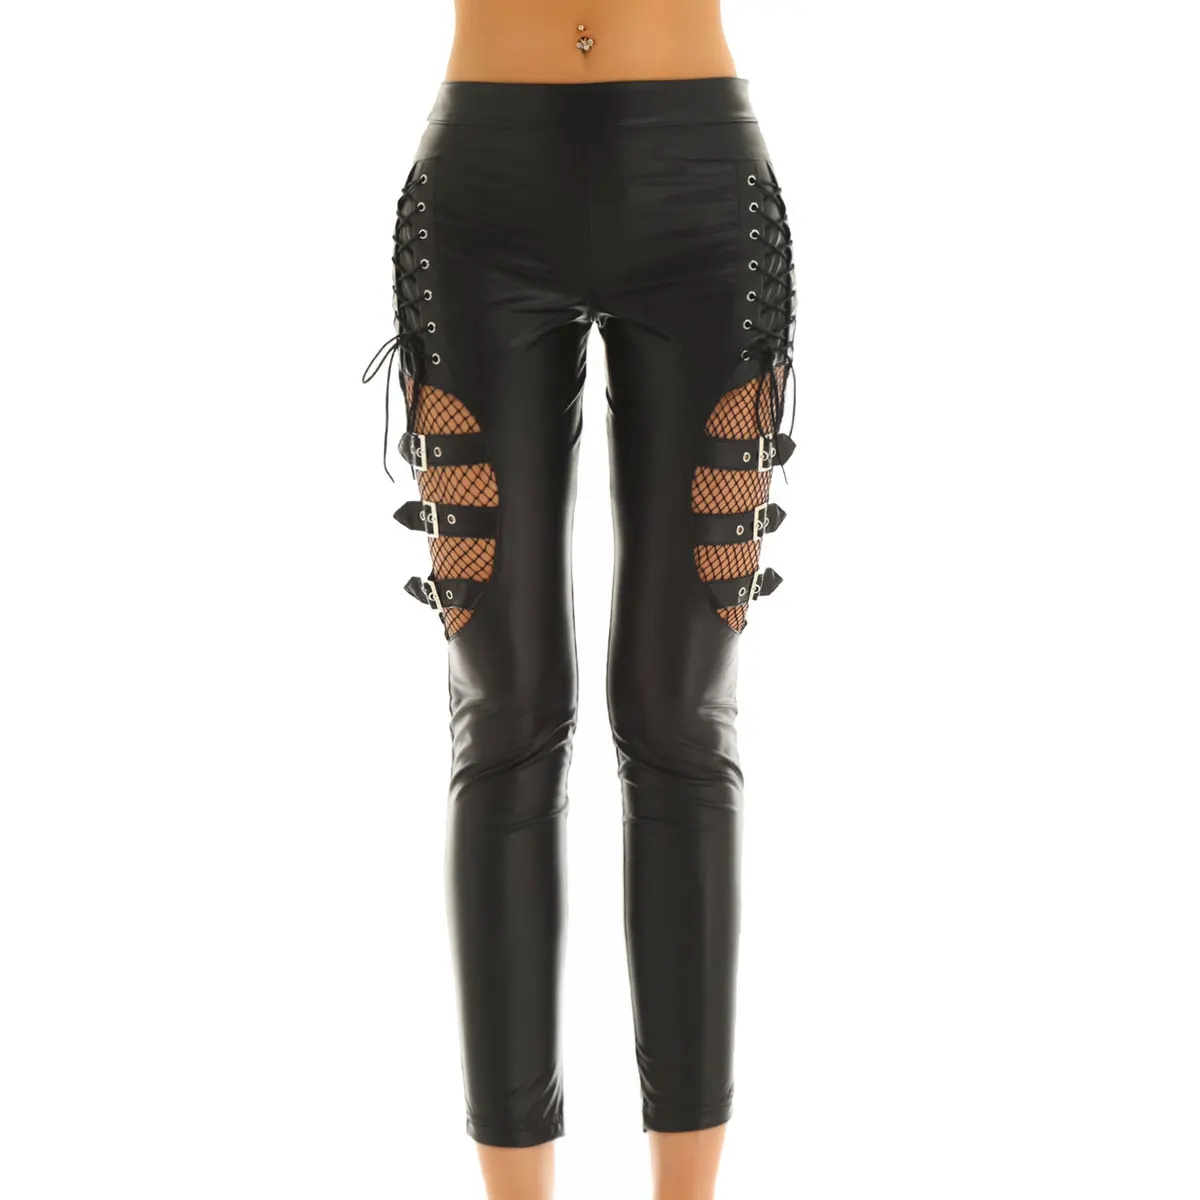 Tiaoчерепашки женские черные из искусственной кожи в сеточку пикантные брюки тонкие эластичные брюки в стиле панк готика Rave вечерние длинные штаны для ночного клуба - Цвет: Black